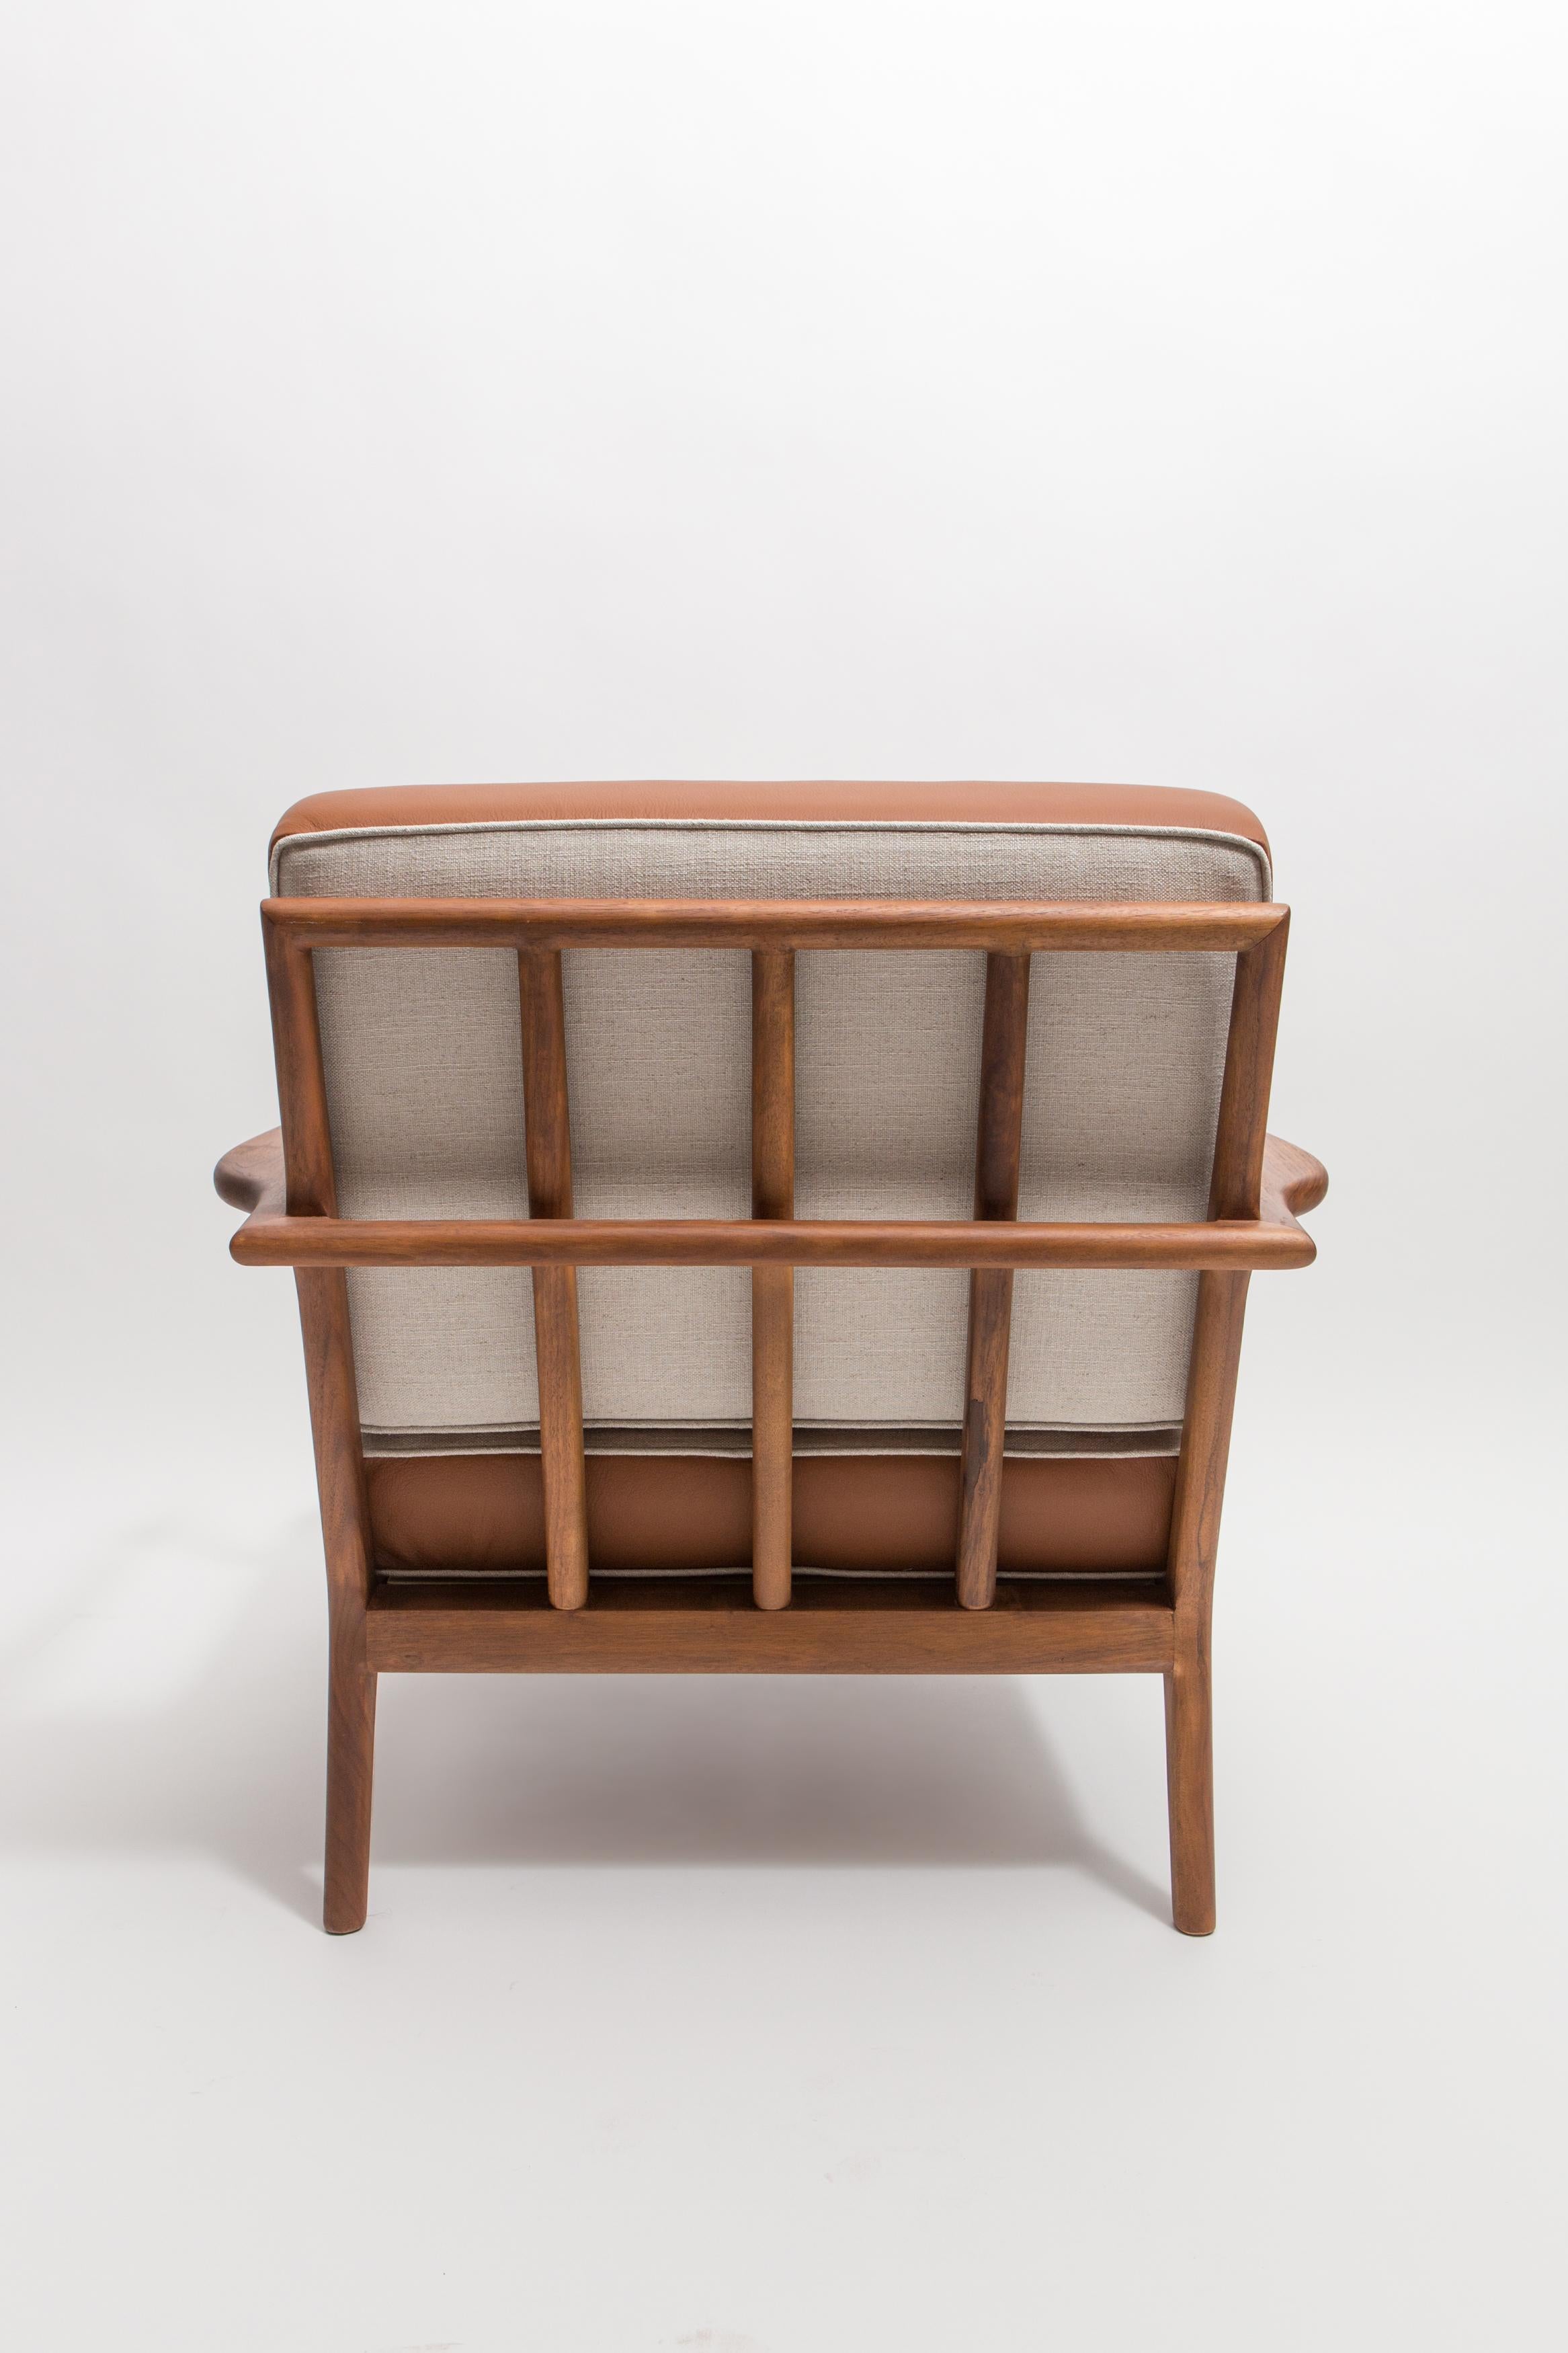 Chaise longue à dossier en noyer avec coussin en cuir et lin.

La chaise longue à dossier sur rails fait partie de la collection Rail Back, conçue à l'origine par Mel Smilow en 1950 et officiellement réintroduite en 2013. Les cadres en bois sculpté